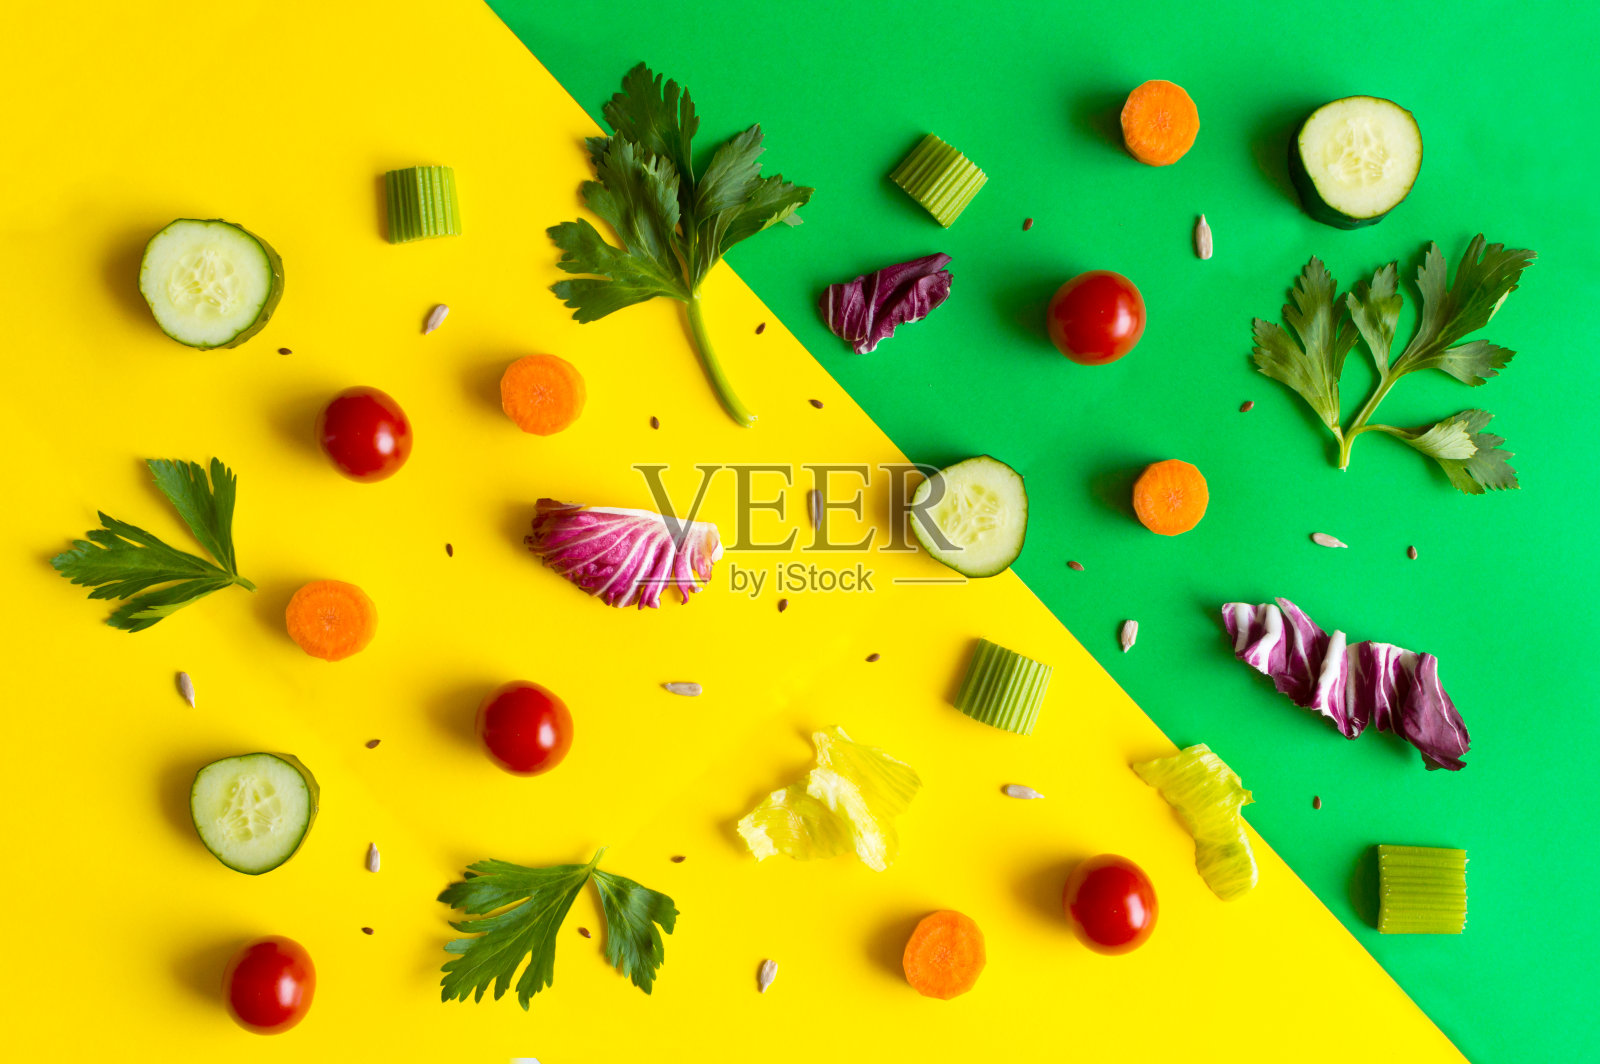 食材包括沙拉、生菜叶、黄瓜、红番茄、胡萝卜、芹菜等，以色彩缤纷的绿色和黄色为背景照片摄影图片